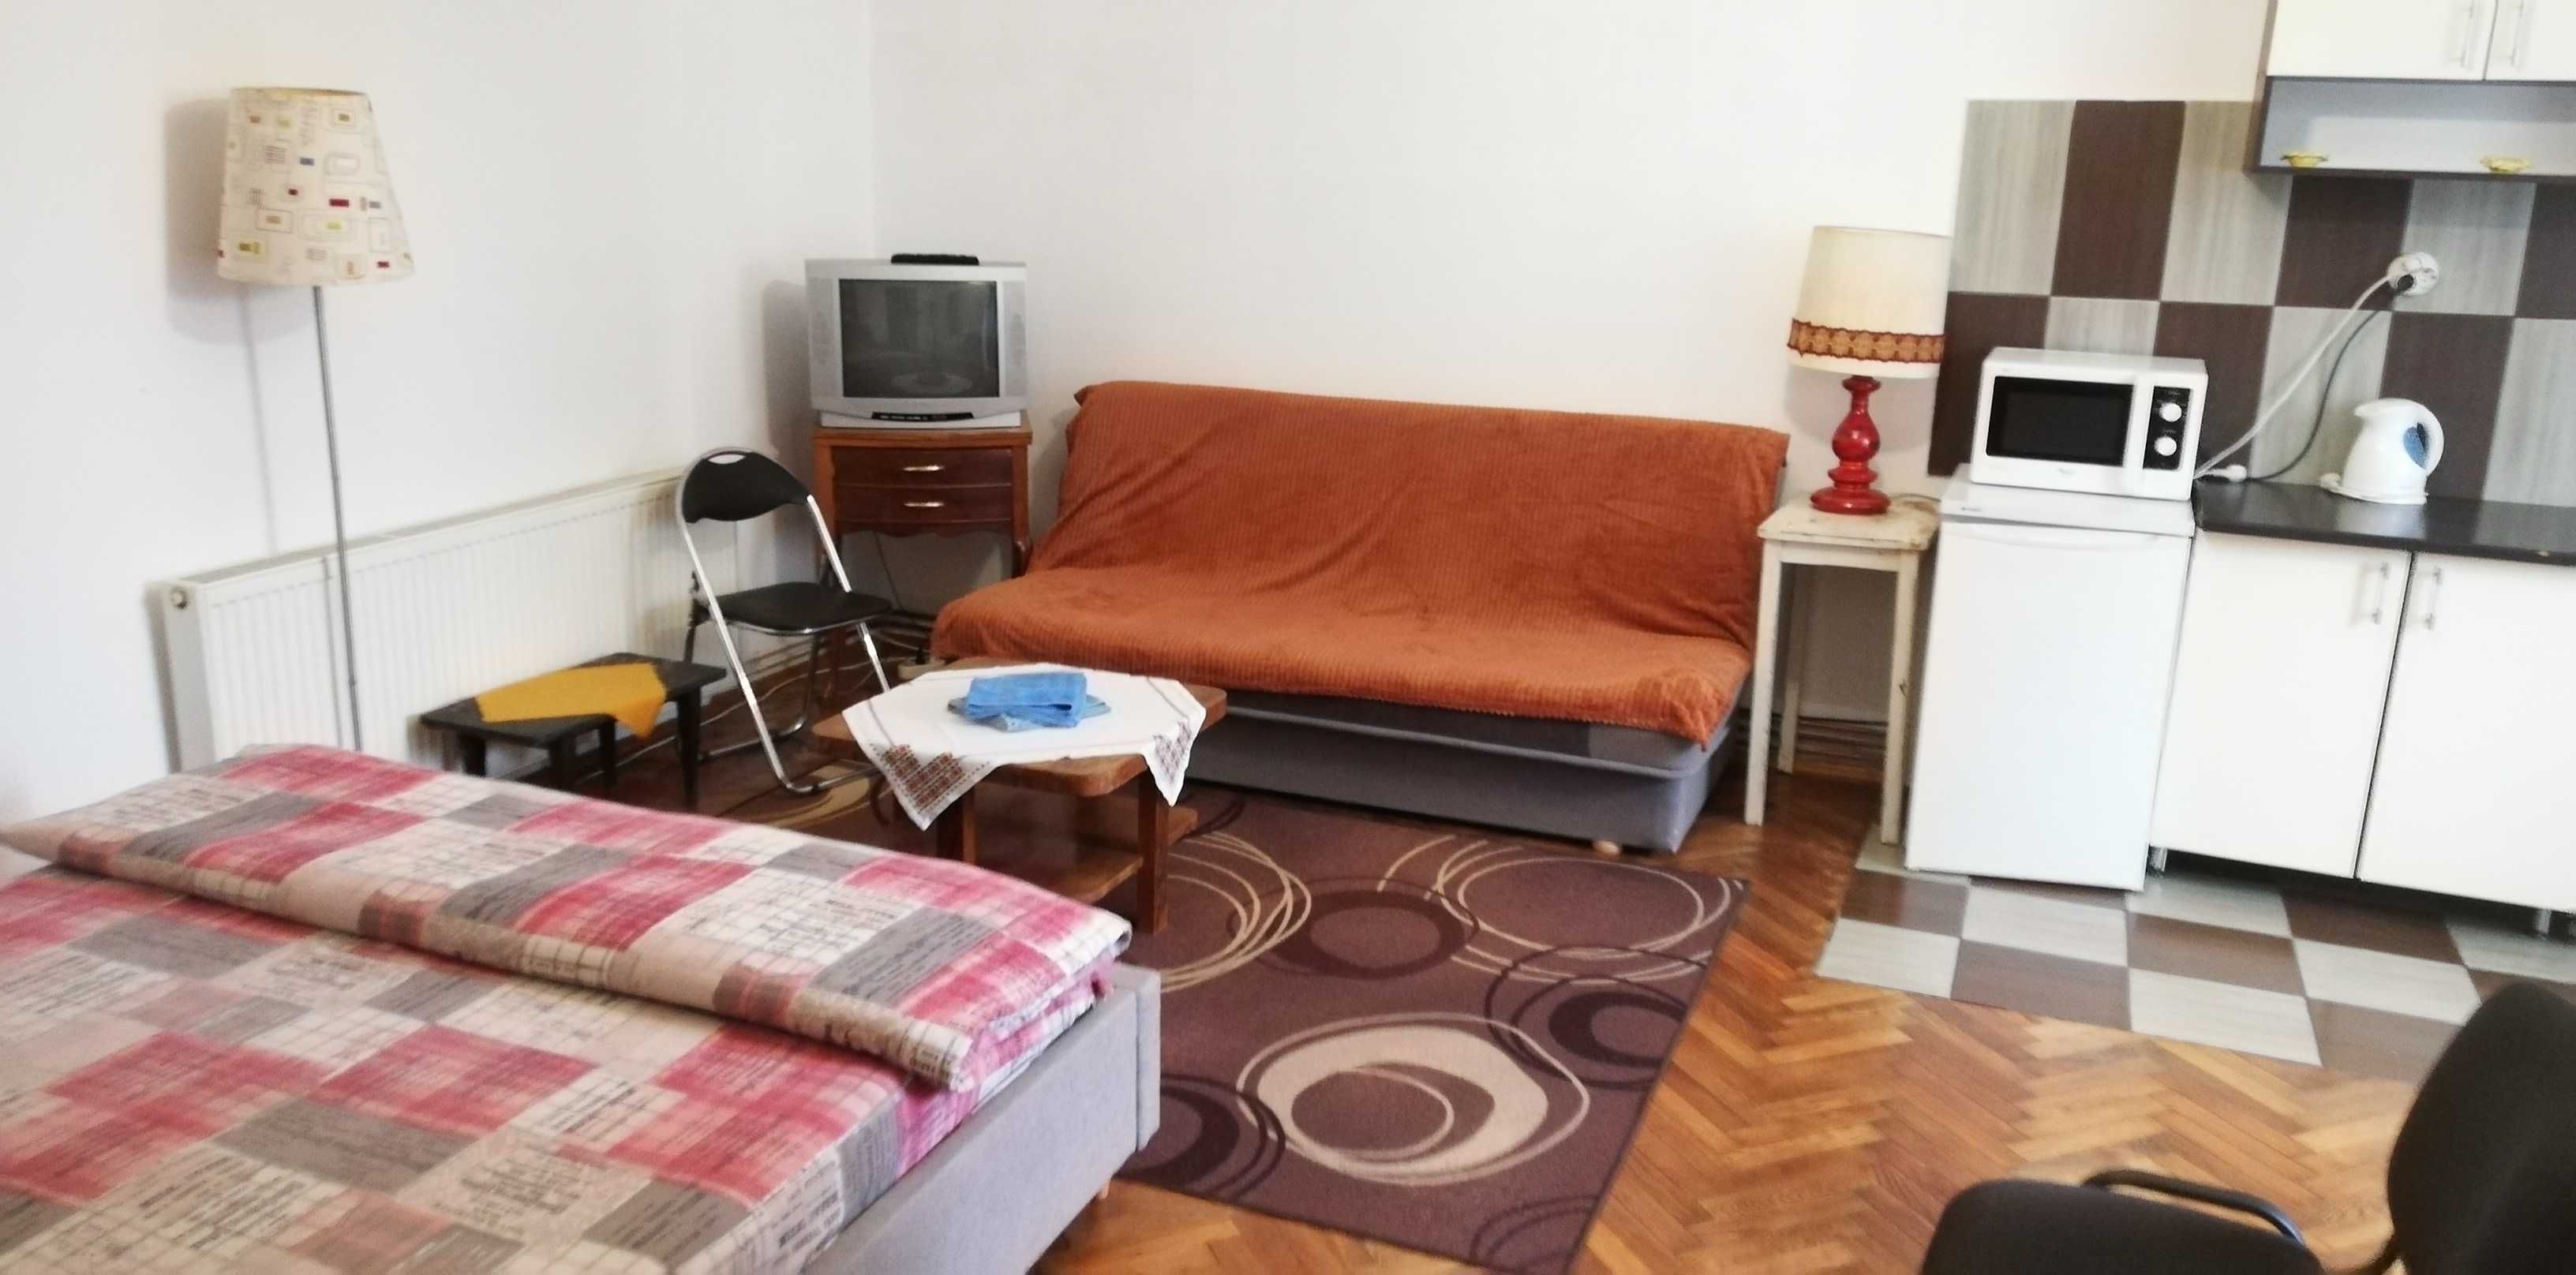 Cazare regim hotelier Cluj central, Untold si Electric disponibil